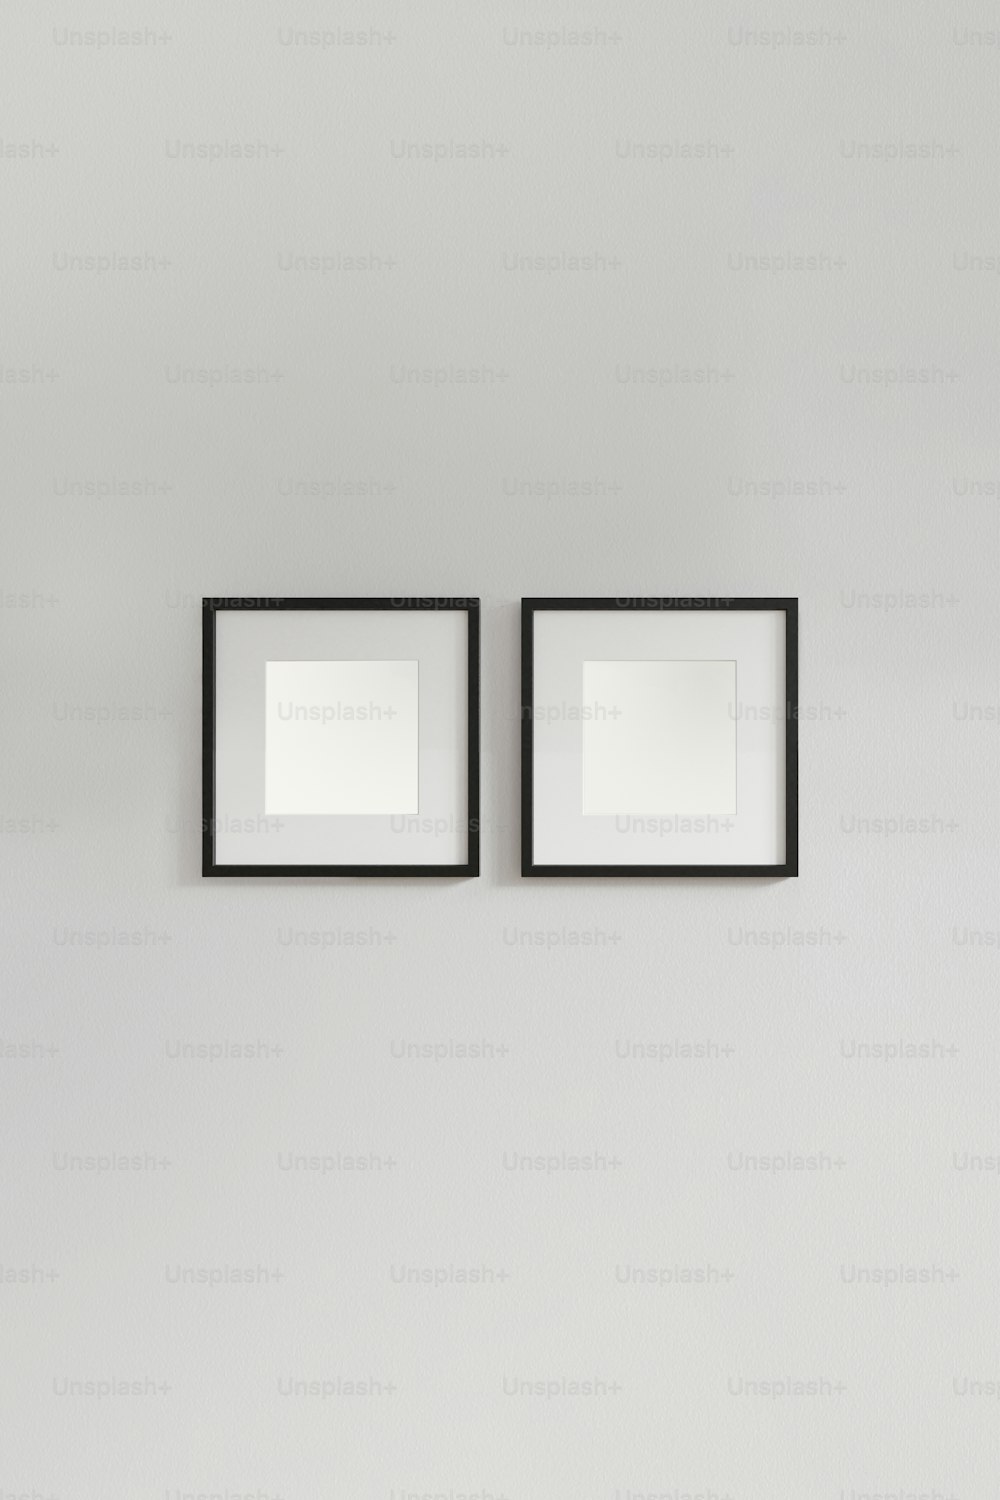 Due immagini incorniciate in bianco e nero appese a una parete